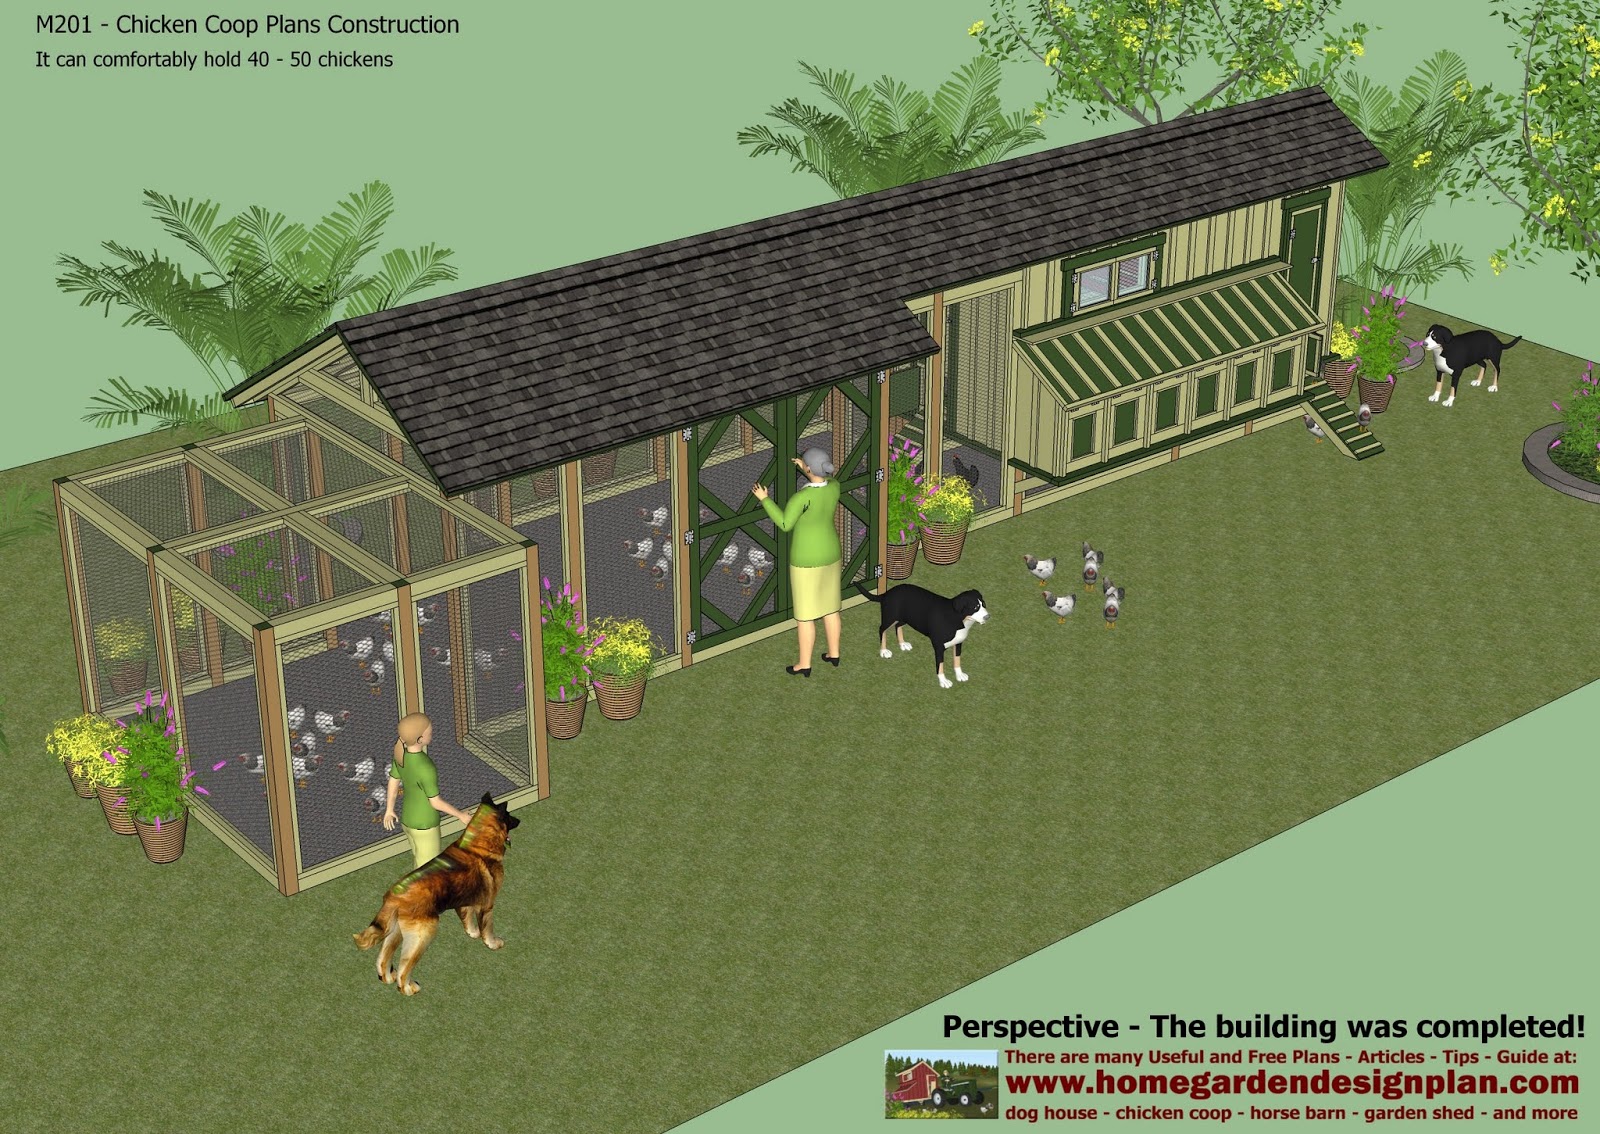 home garden plans: September 2013